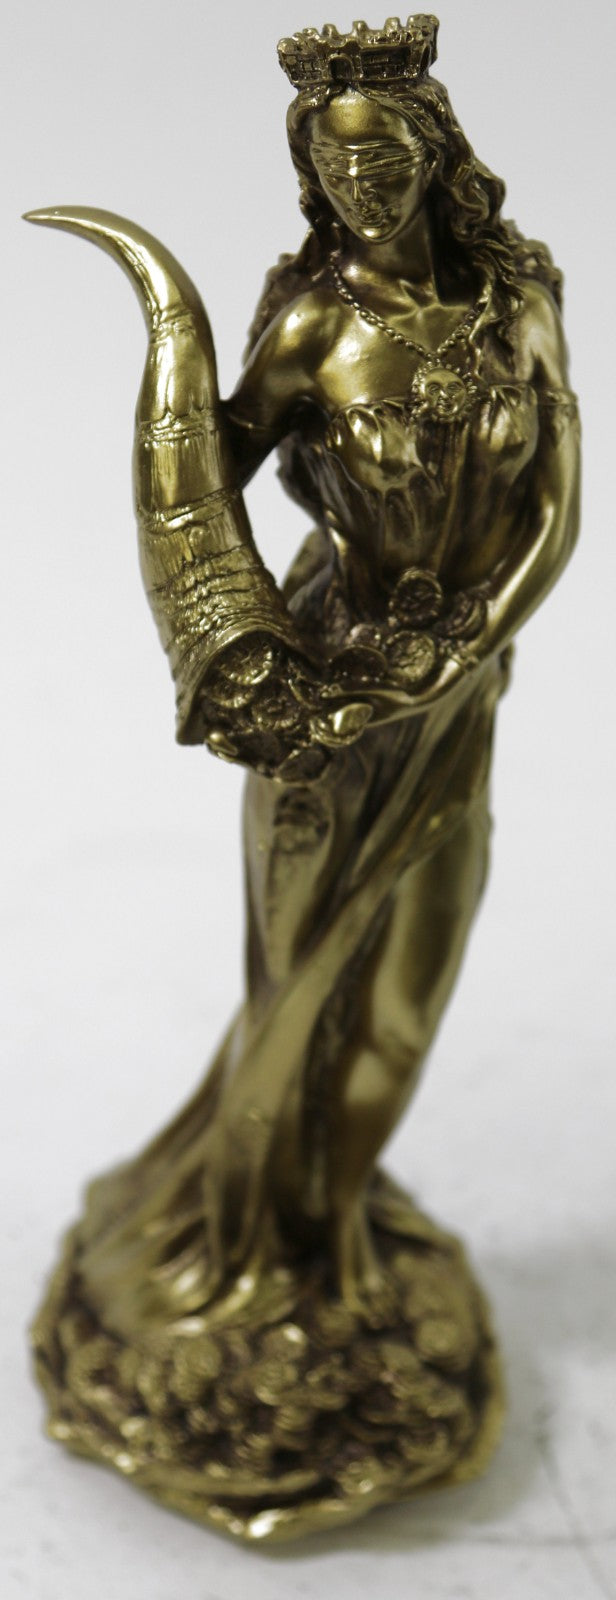 Goddess of Money Luck Statue Sculpture Figure Bronze Finish Cold Cast Art